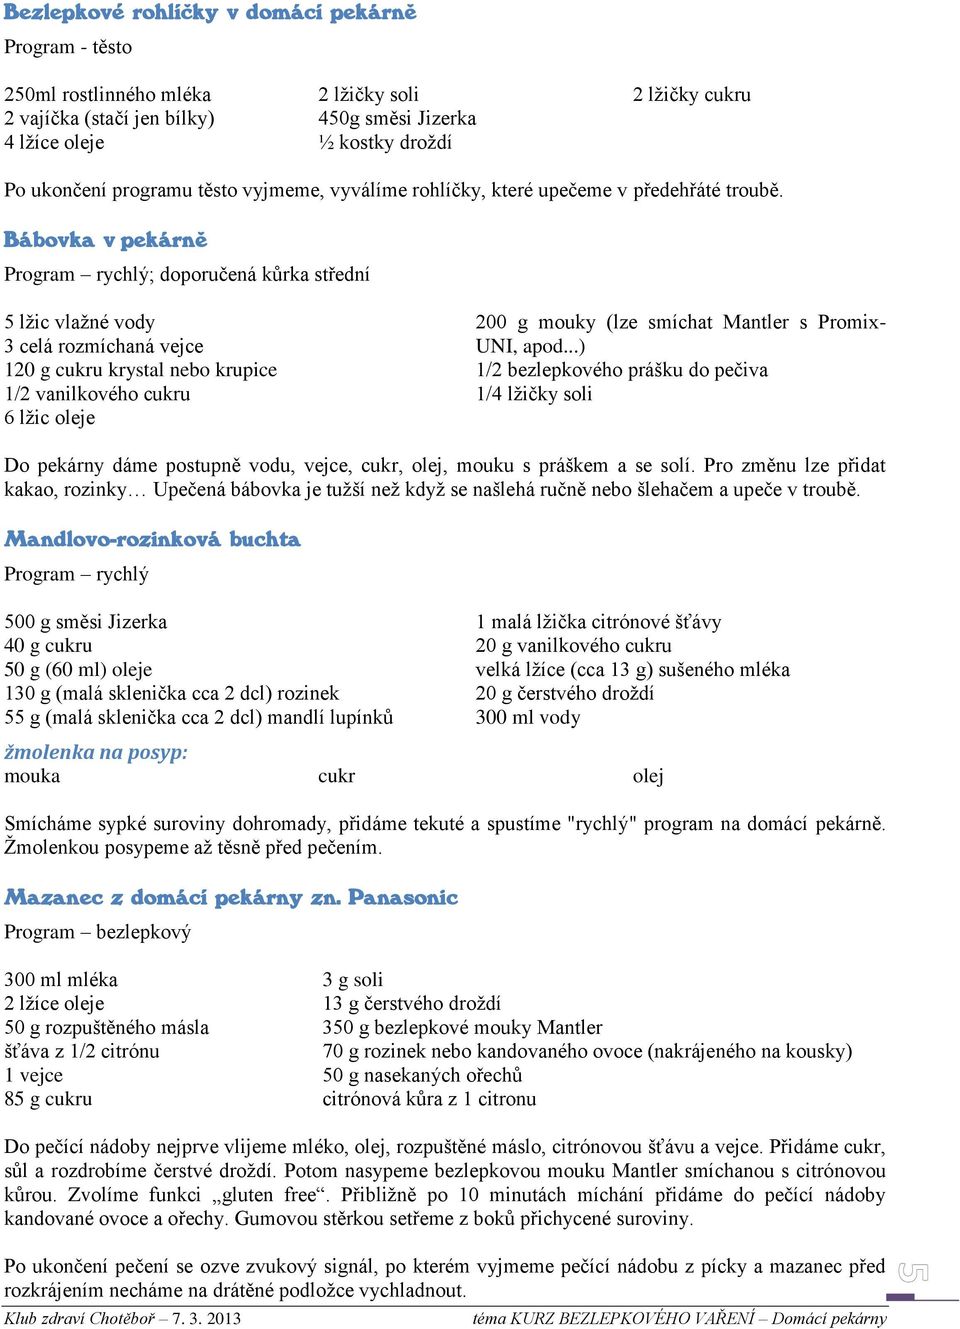 Kurz bezlepkového vaření DOMÁCÍ PEKÁRNY - PDF Stažení zdarma